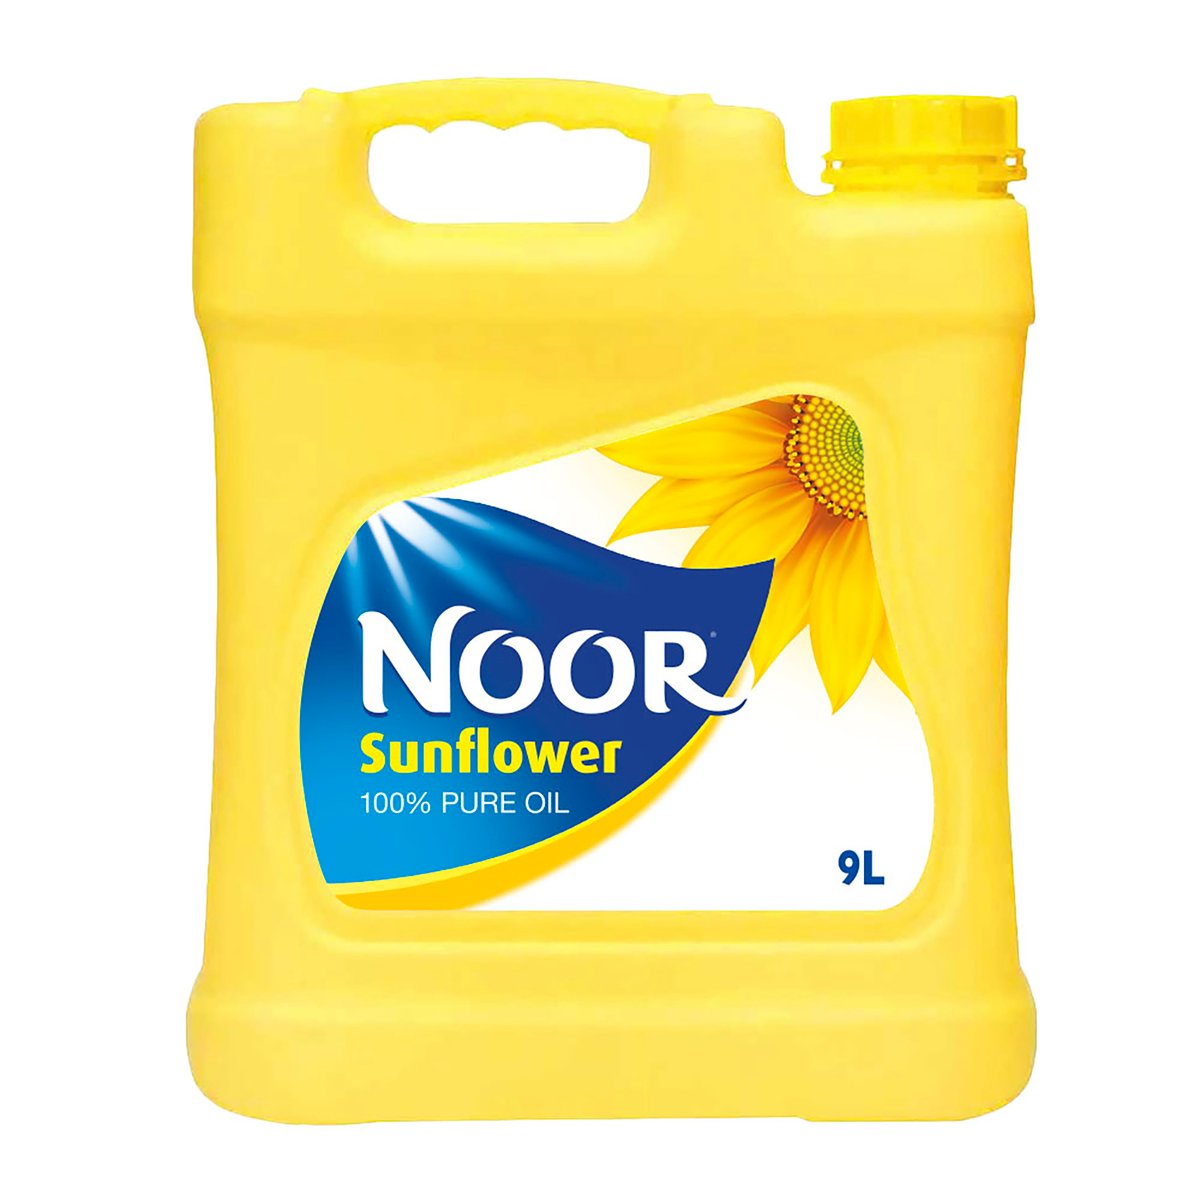 اشتري قم بشراء نور زيت دوار الشمس 9 لتر Online at Best Price من الموقع - من لولو هايبر ماركت Sunflower Oil في السعودية